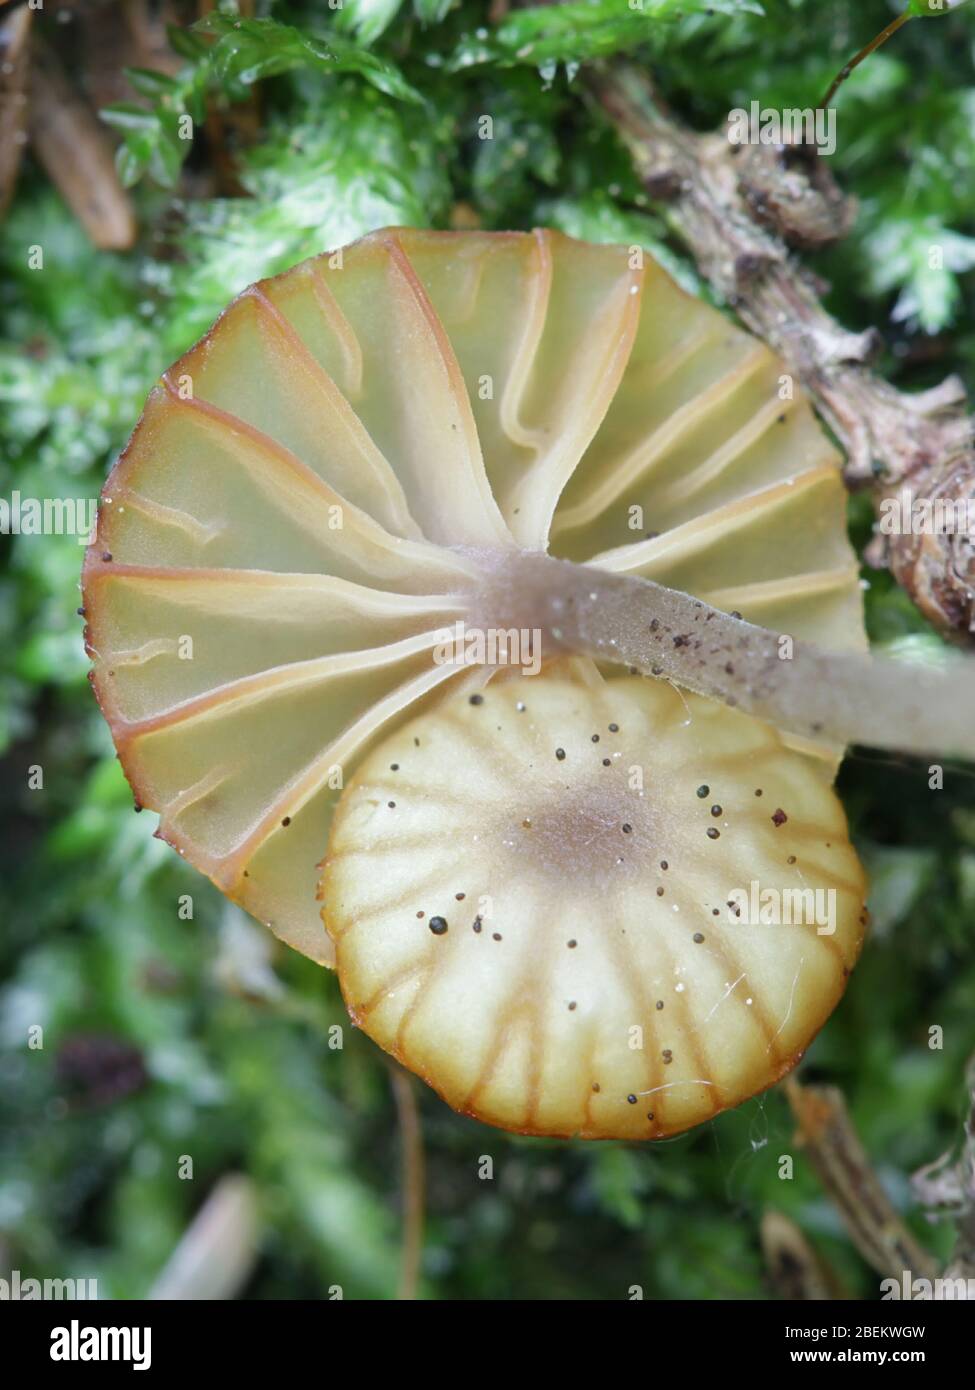 Lichenomphalia umbellifera, ein lichenisierter Pilz, der Heide Navel oder Lichen agaric genannt wird, wilder Pilz aus Finnland Stockfoto